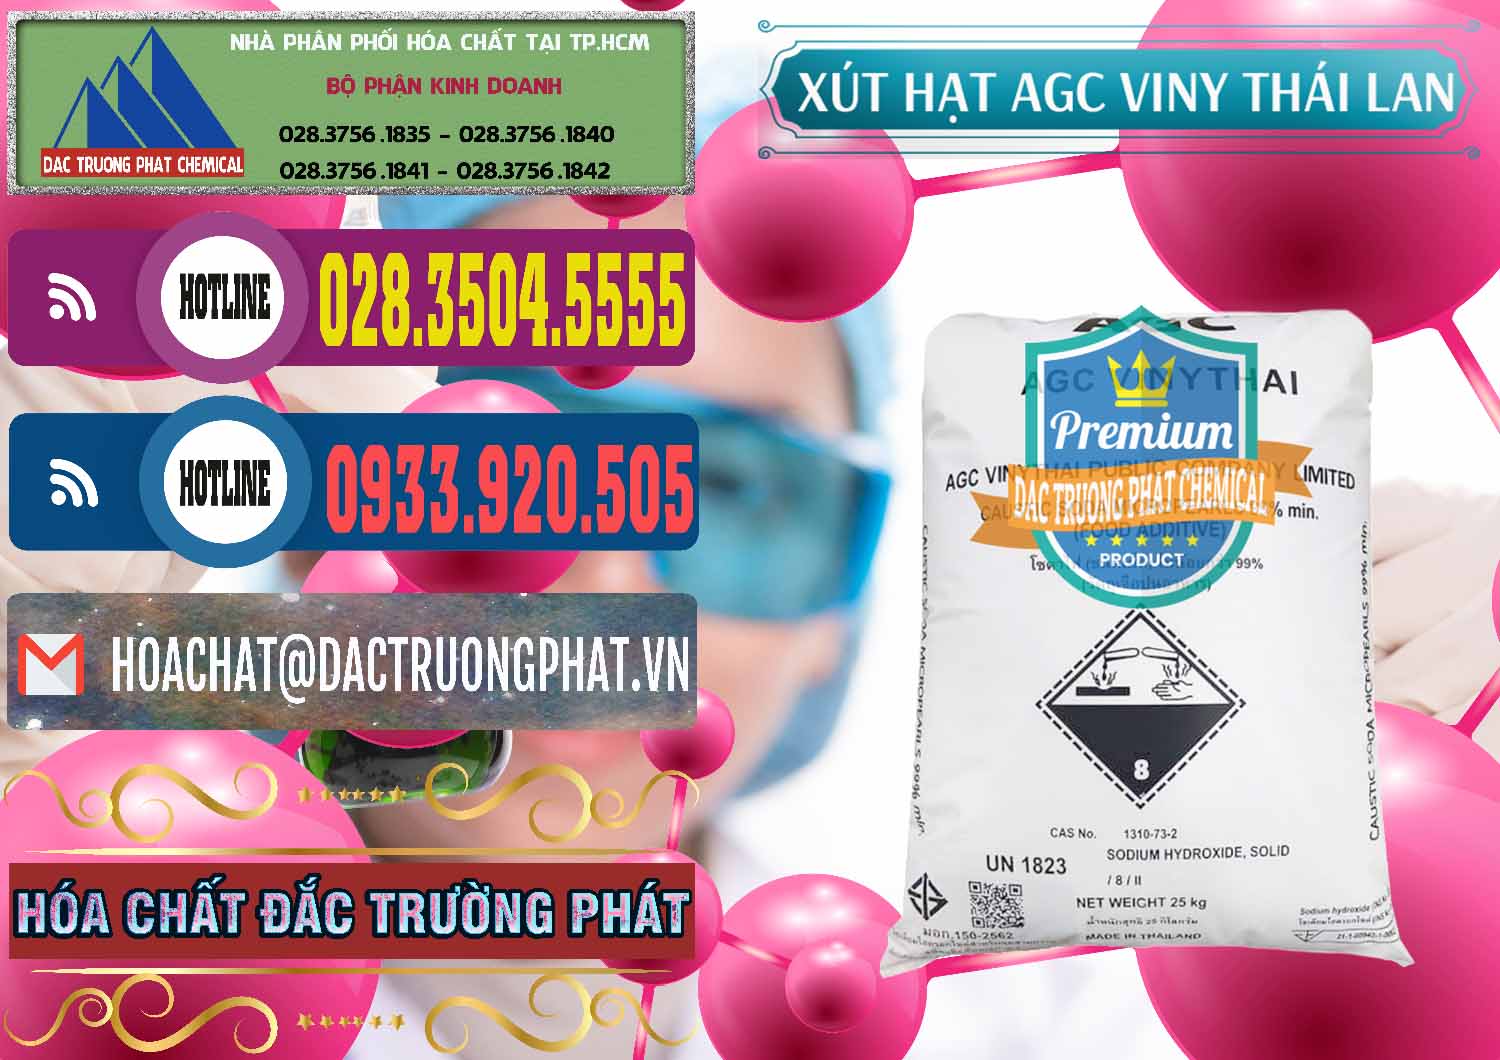 Cty chuyên cung ứng và bán Xút Hạt - NaOH Bột 99% AGC Viny Thái Lan - 0399 - Nhà phân phối và cung ứng hóa chất tại TP.HCM - muabanhoachat.com.vn